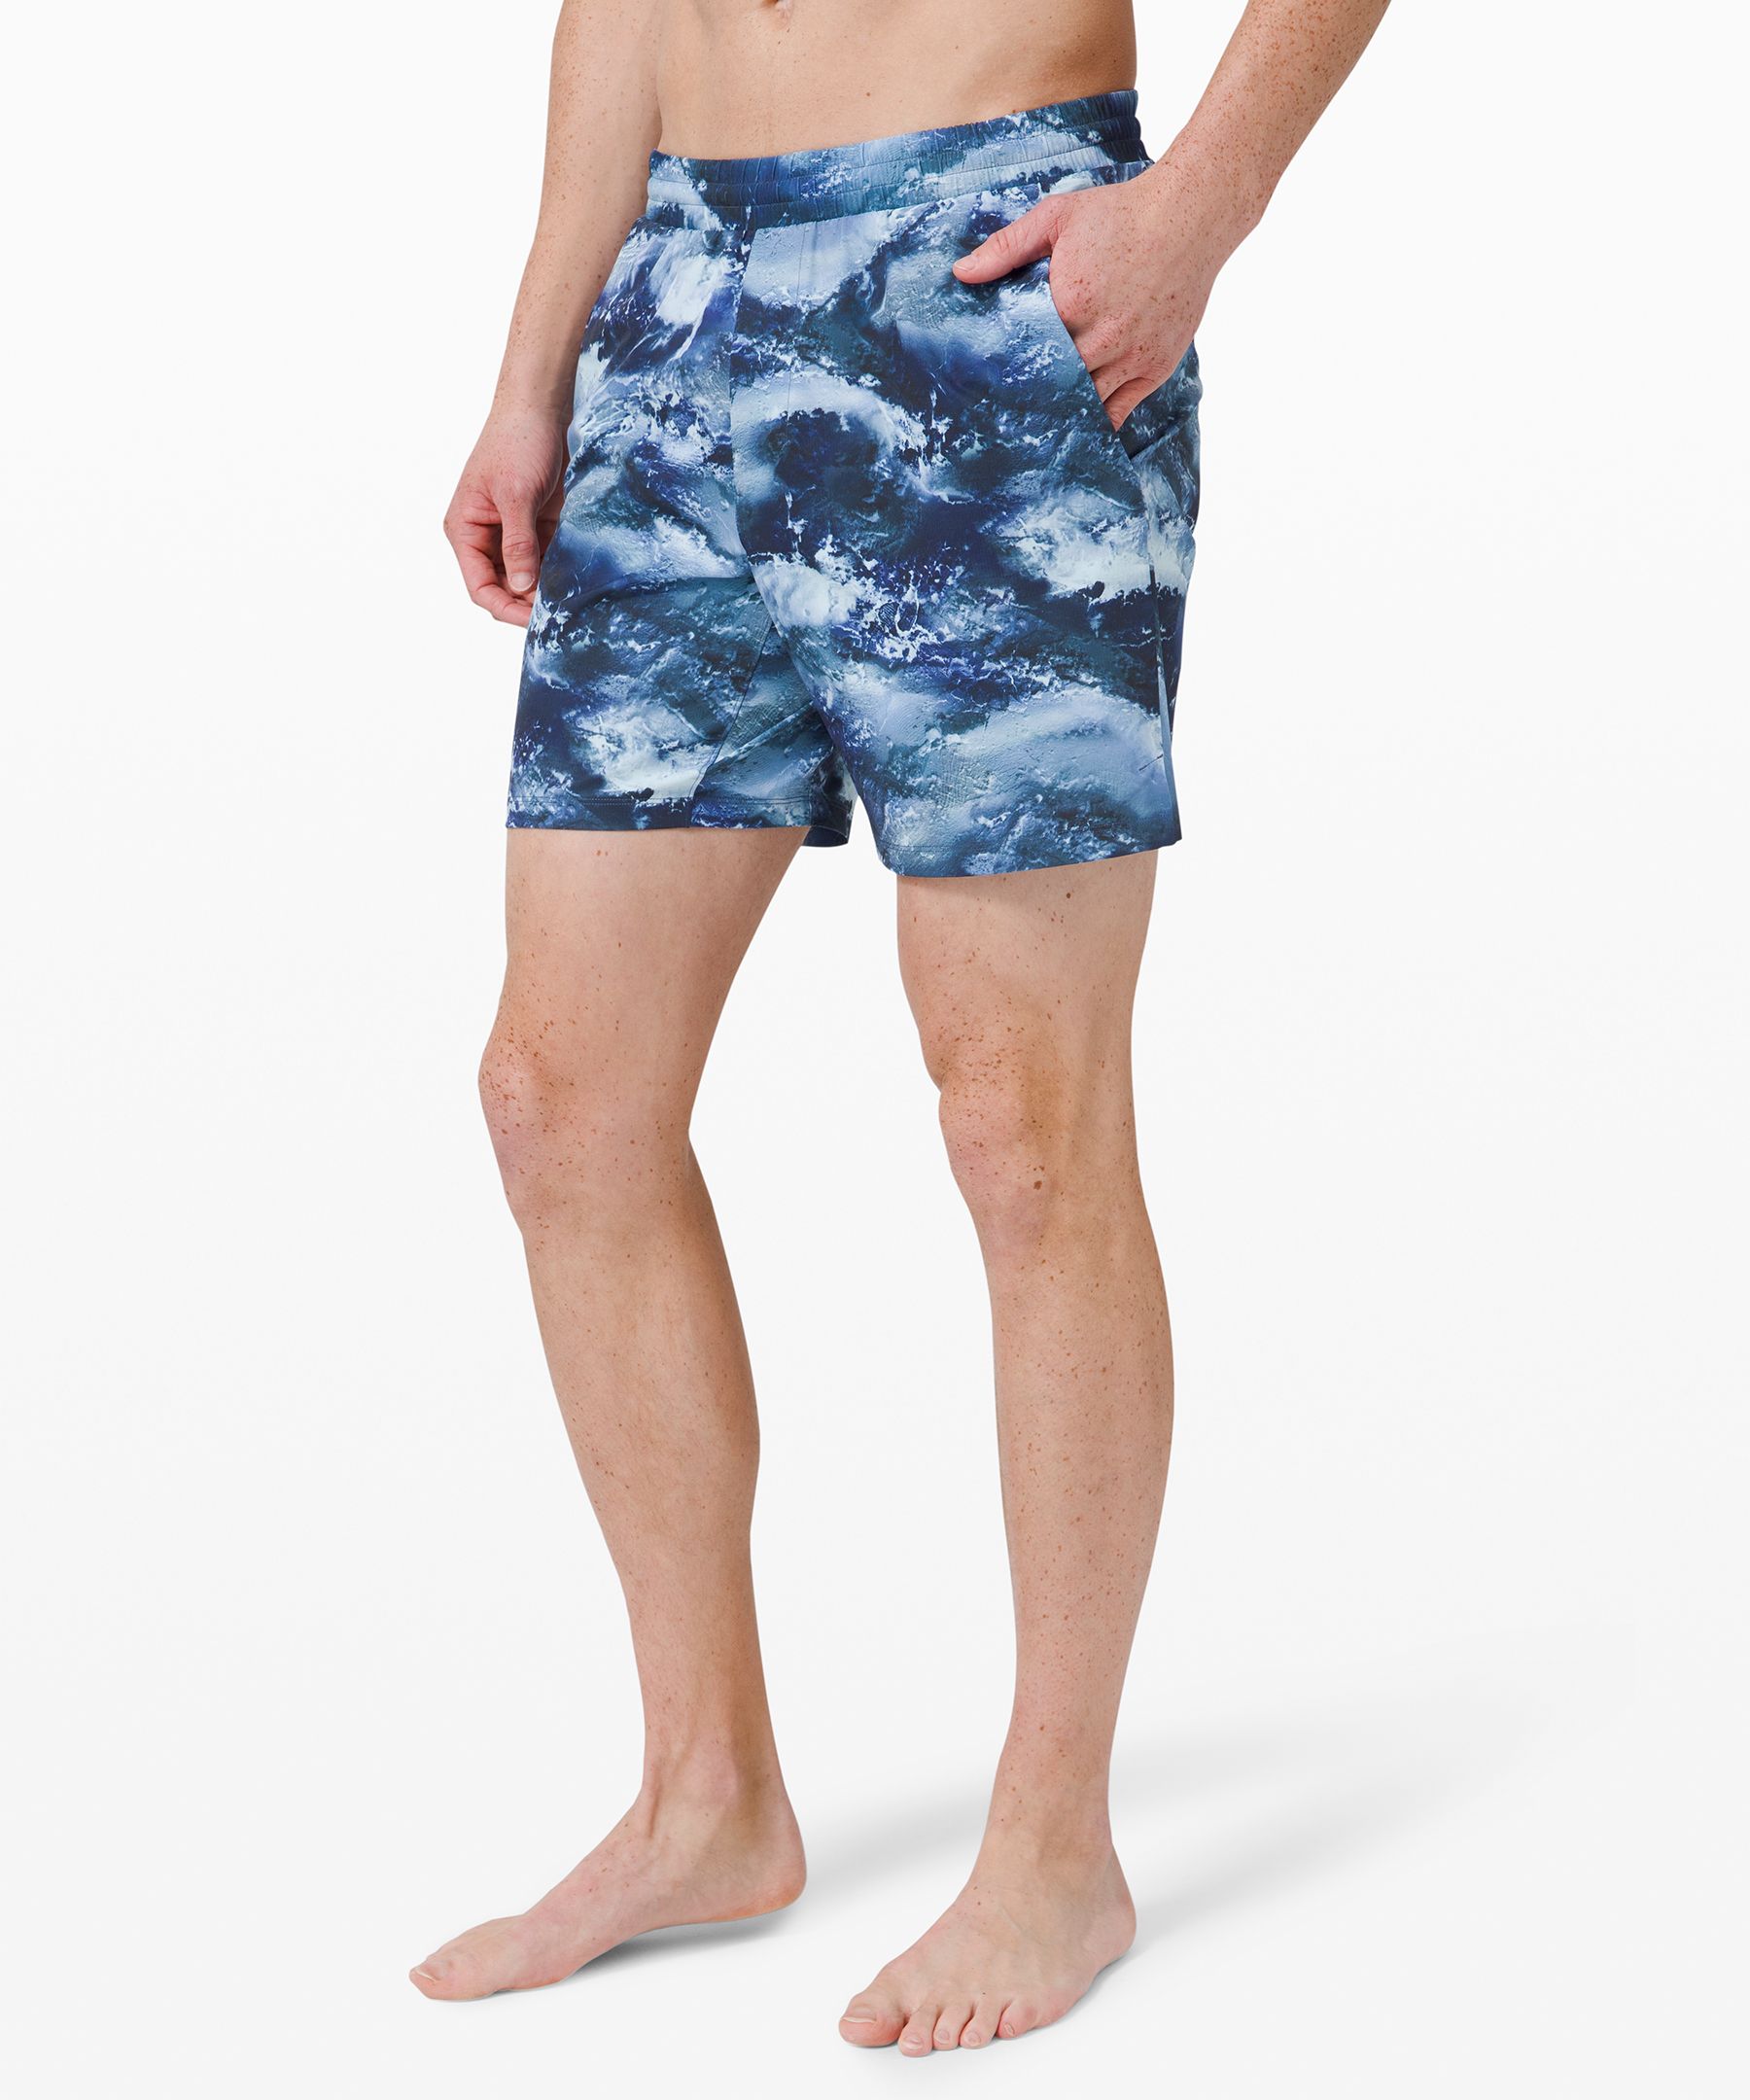 lululemon swim shorts